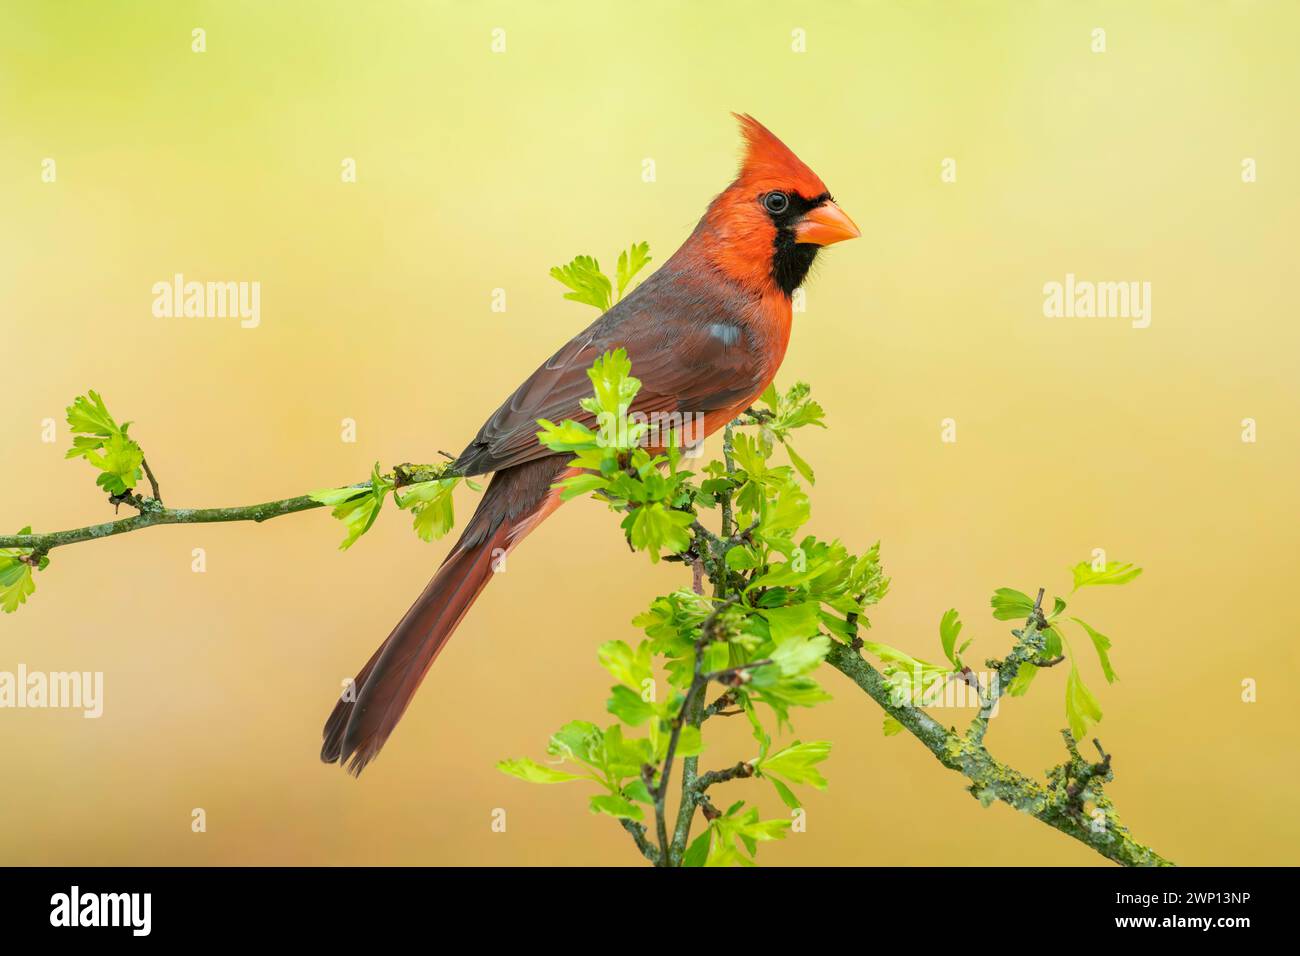 northern cardinal or red cardinal, Cardinalis cardinalis Stock Photo